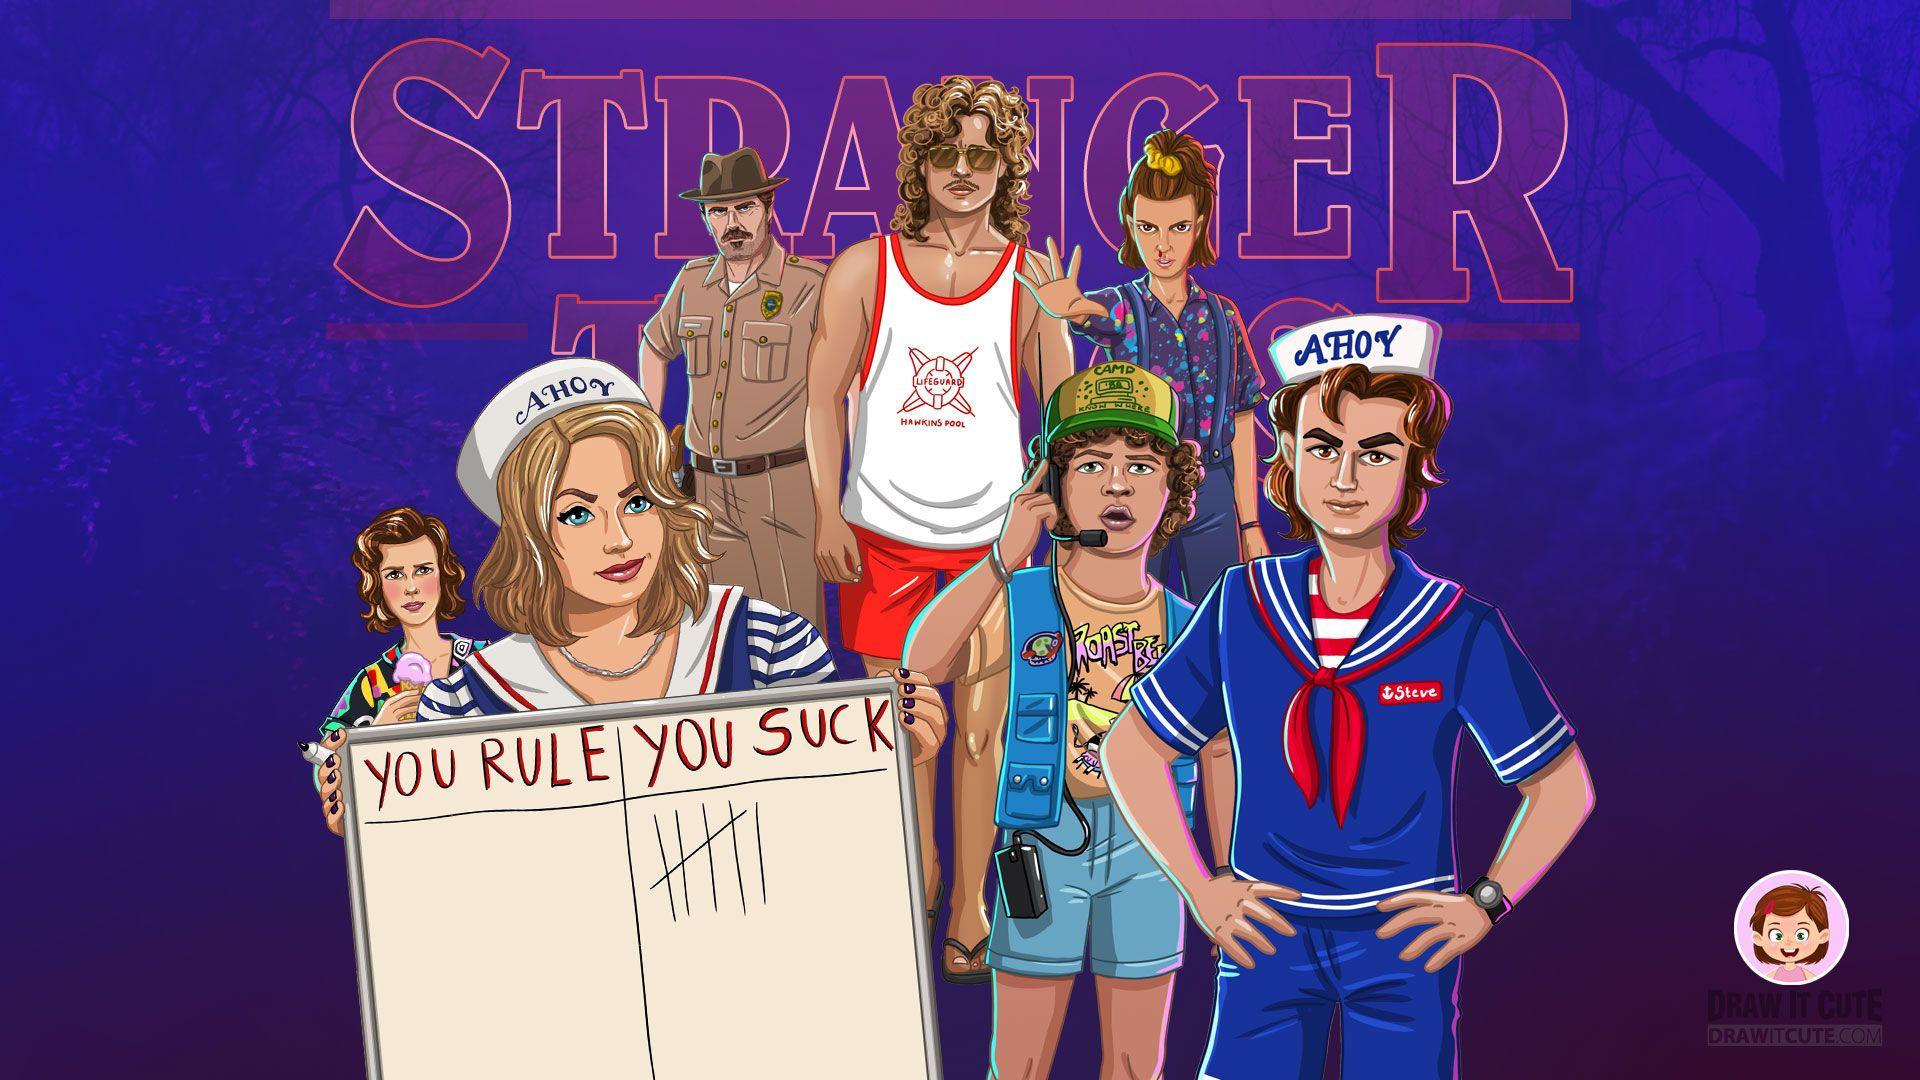 Steve Stranger Things Wallpapers - Top Free Steve Stranger Things